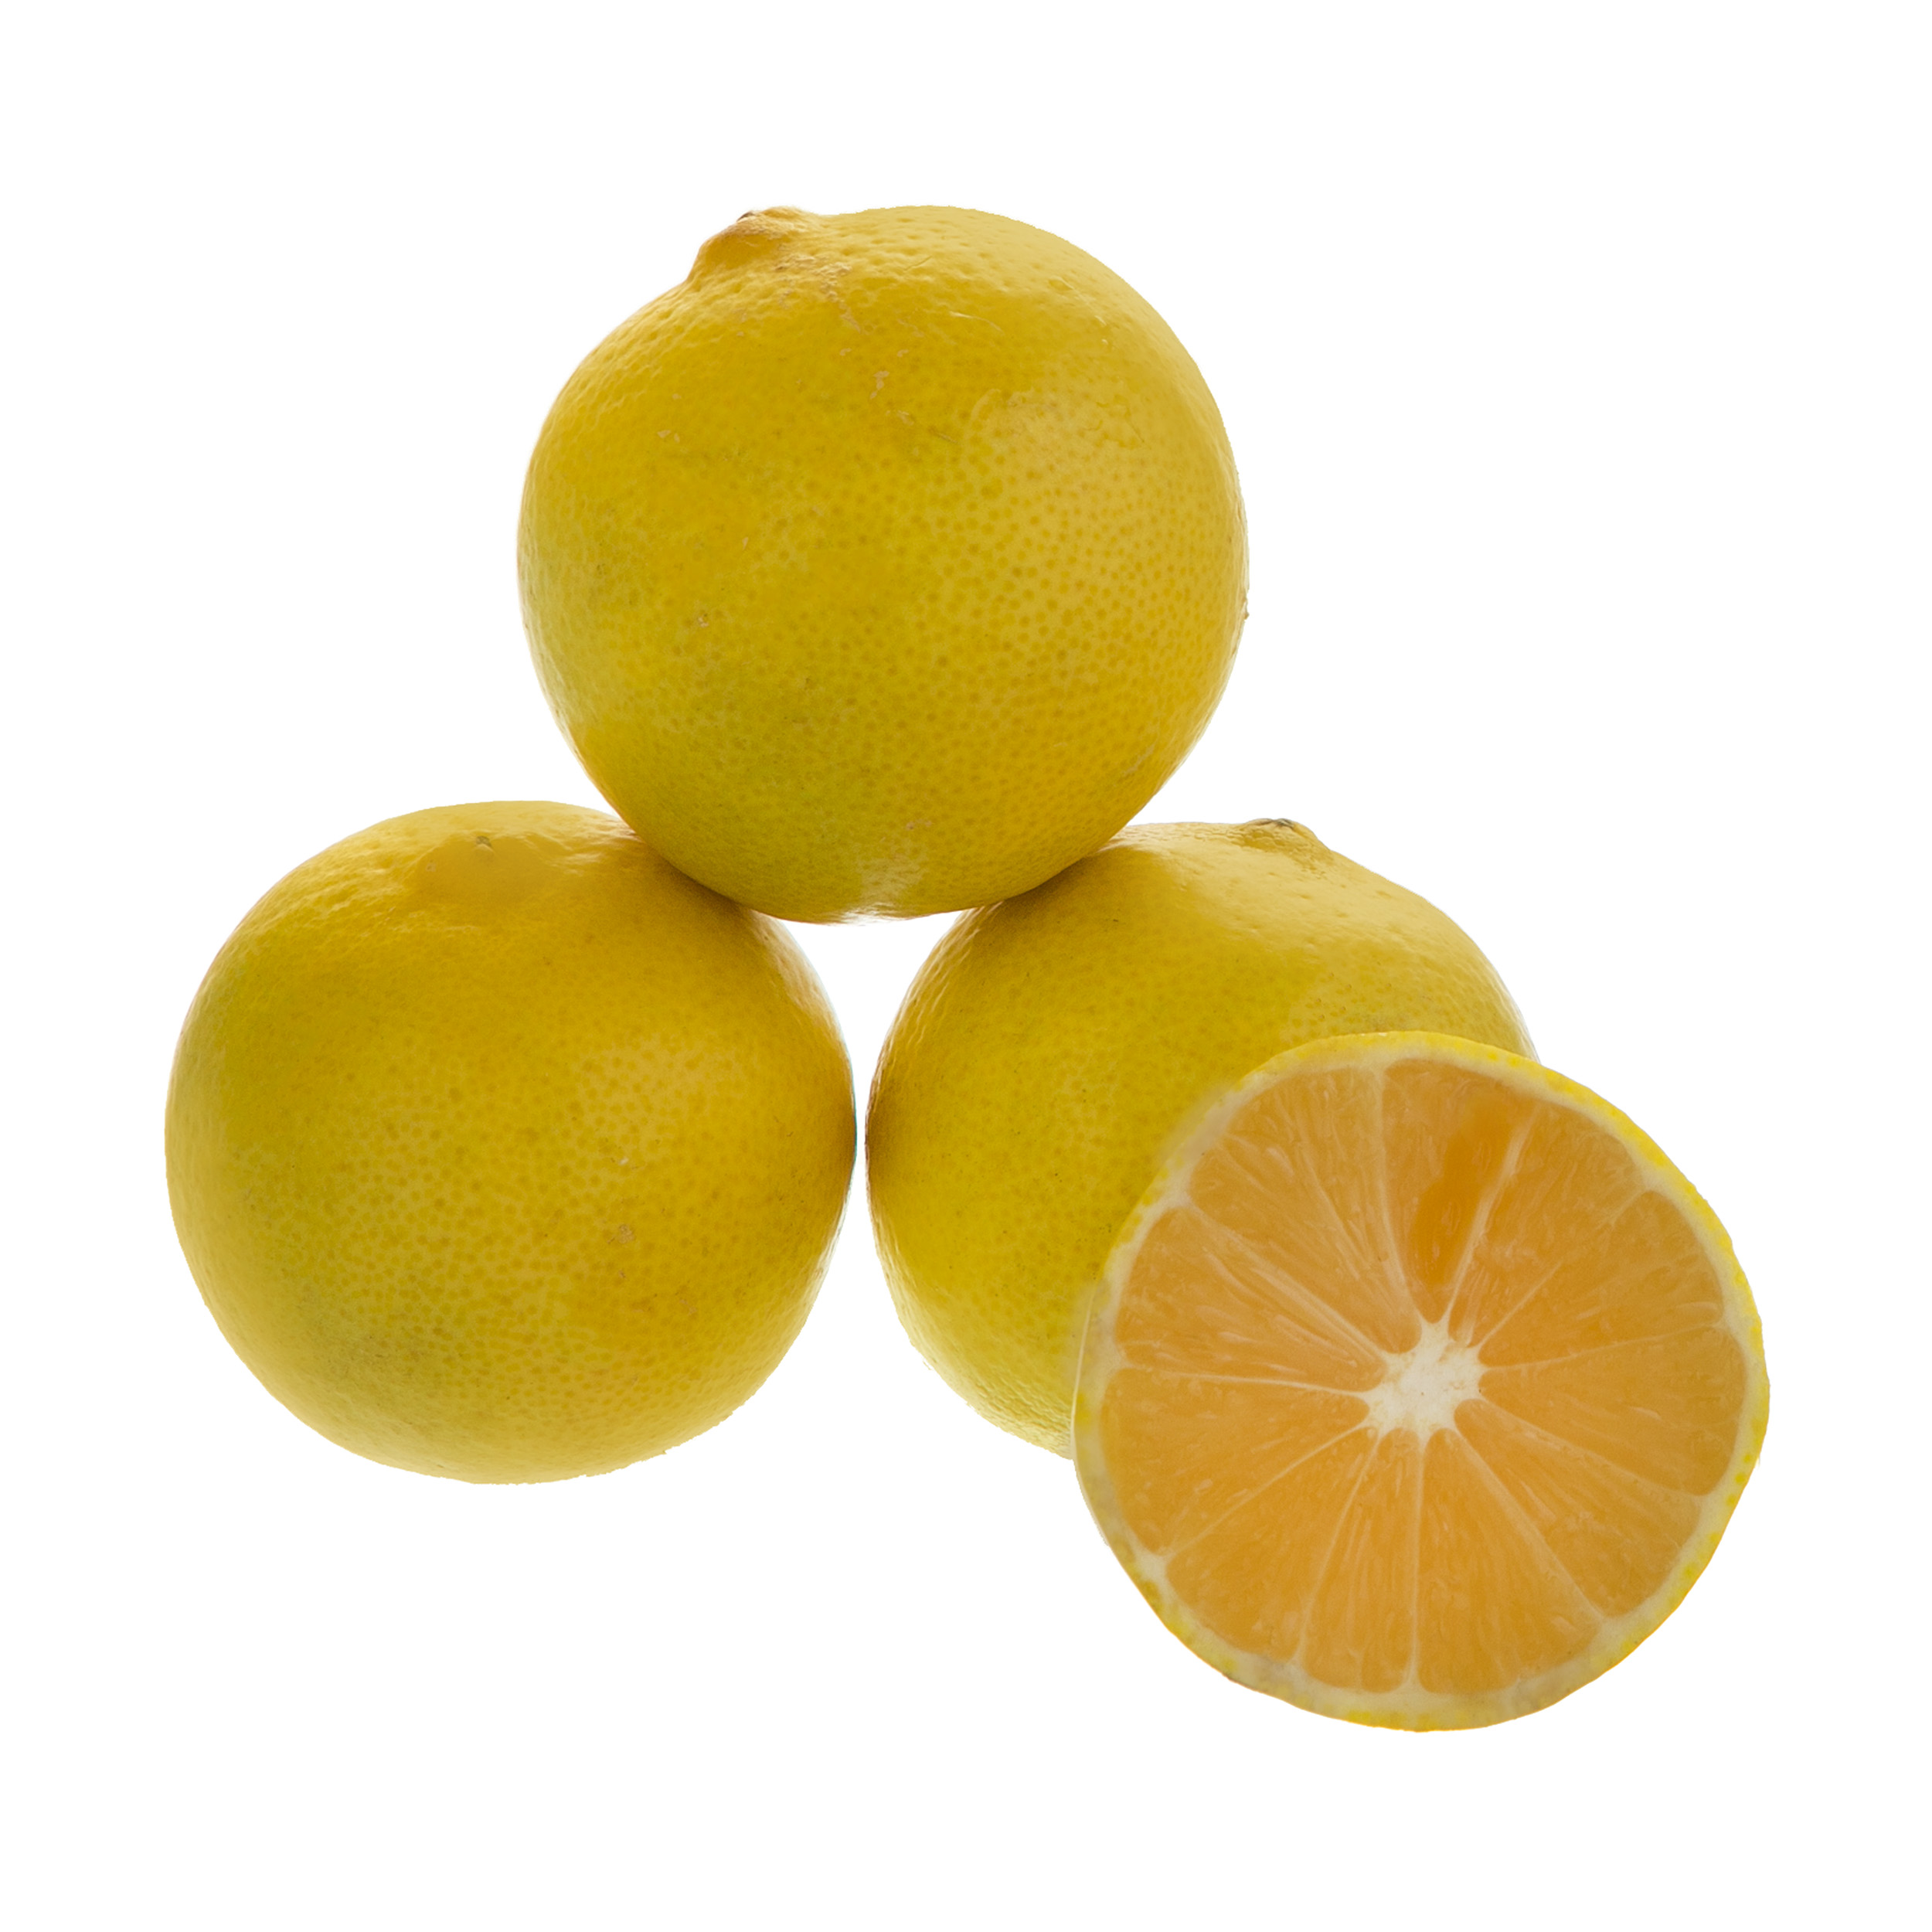 لیمو شیرین درجه یک - 5 کیلوگرم